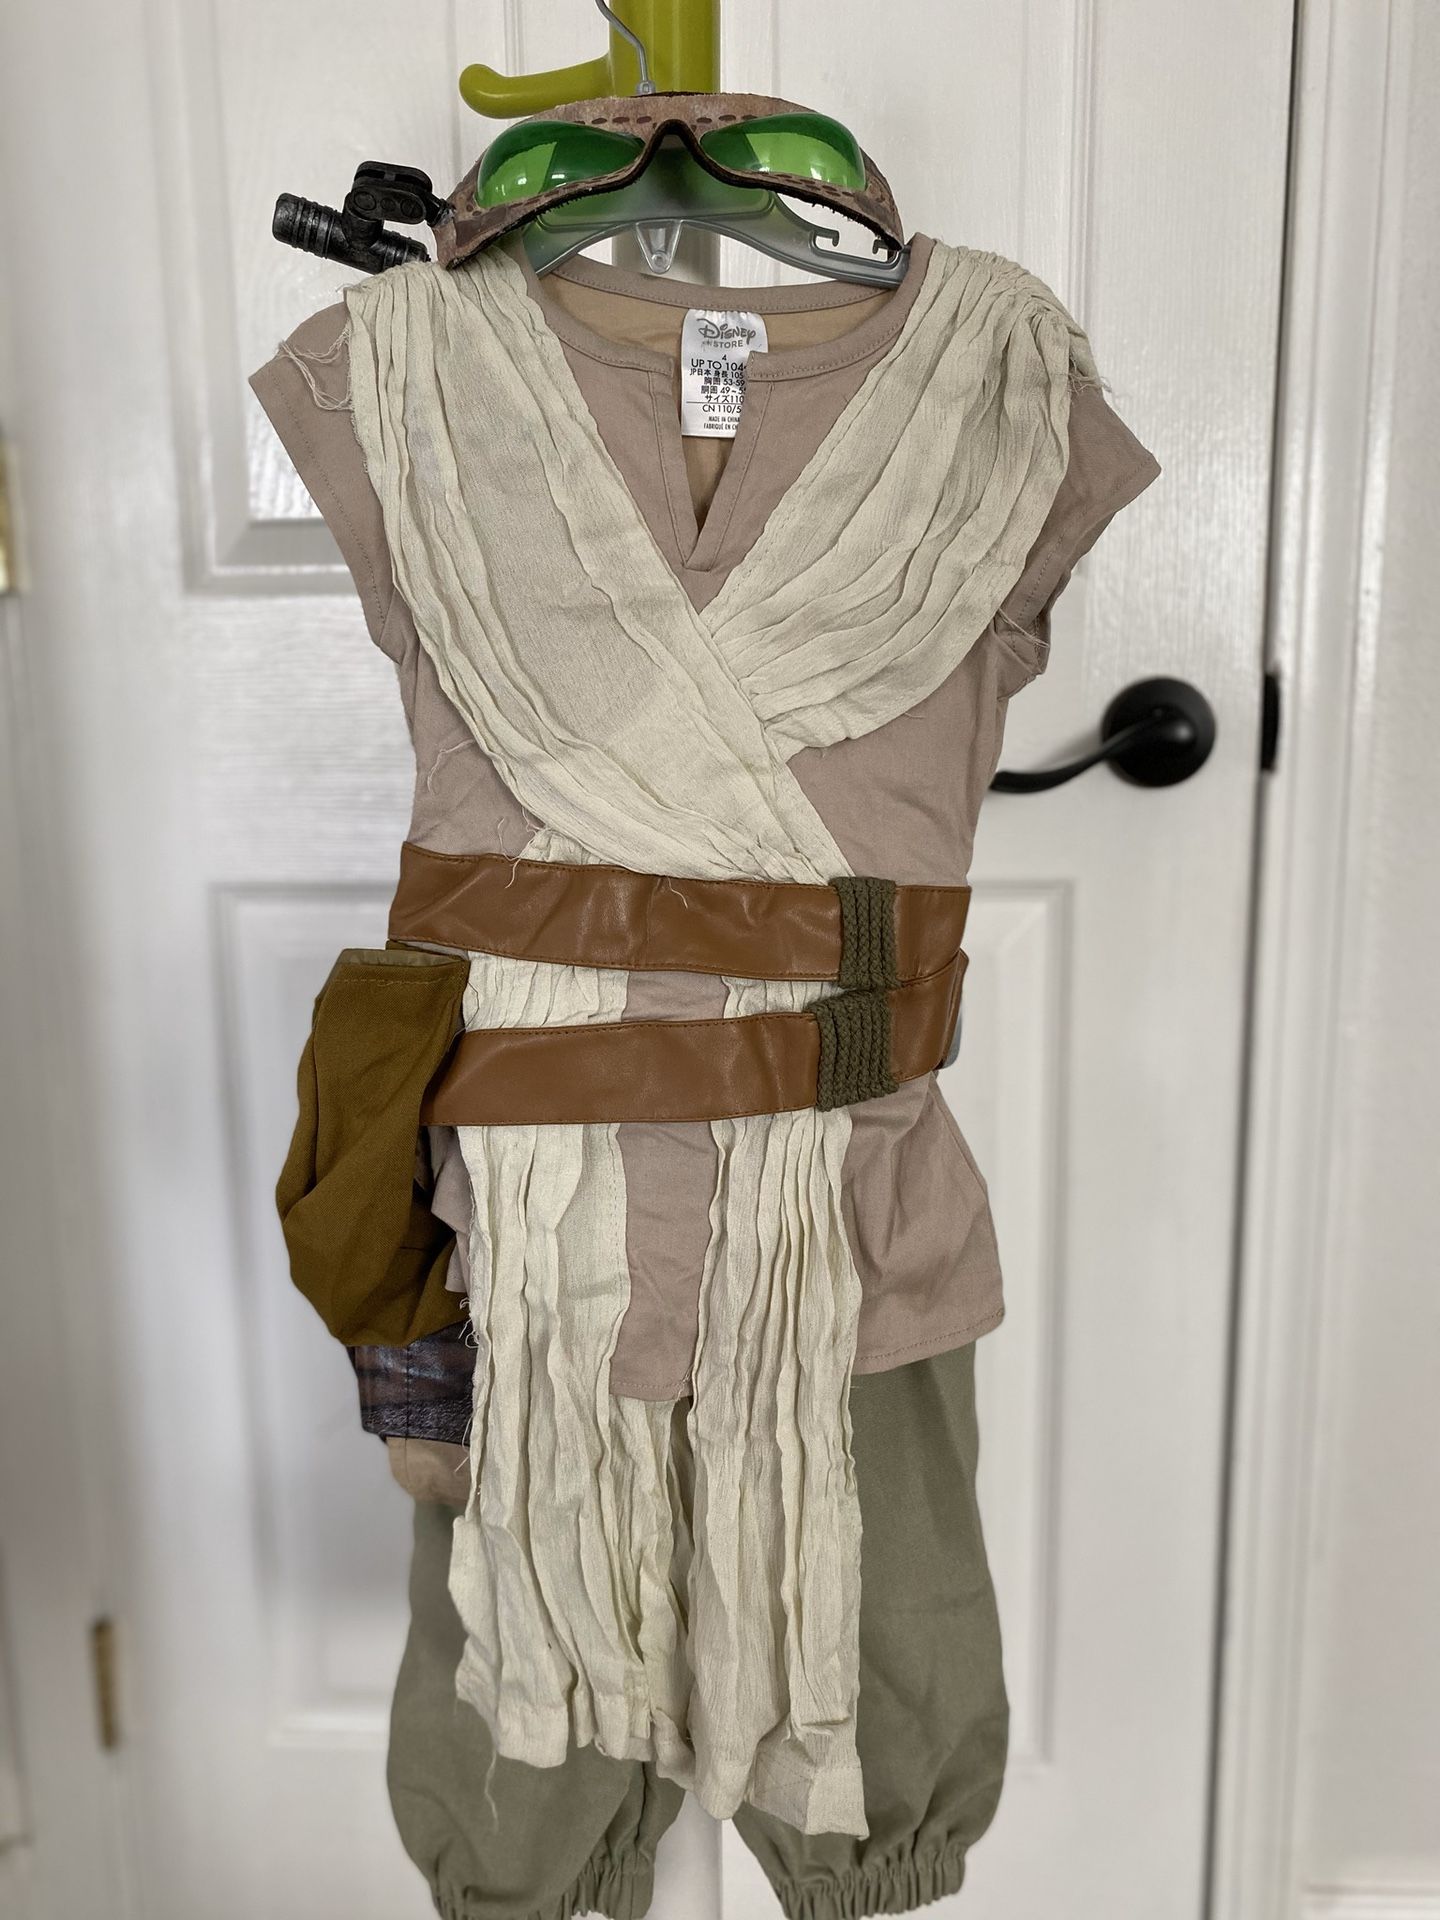 Rey costume